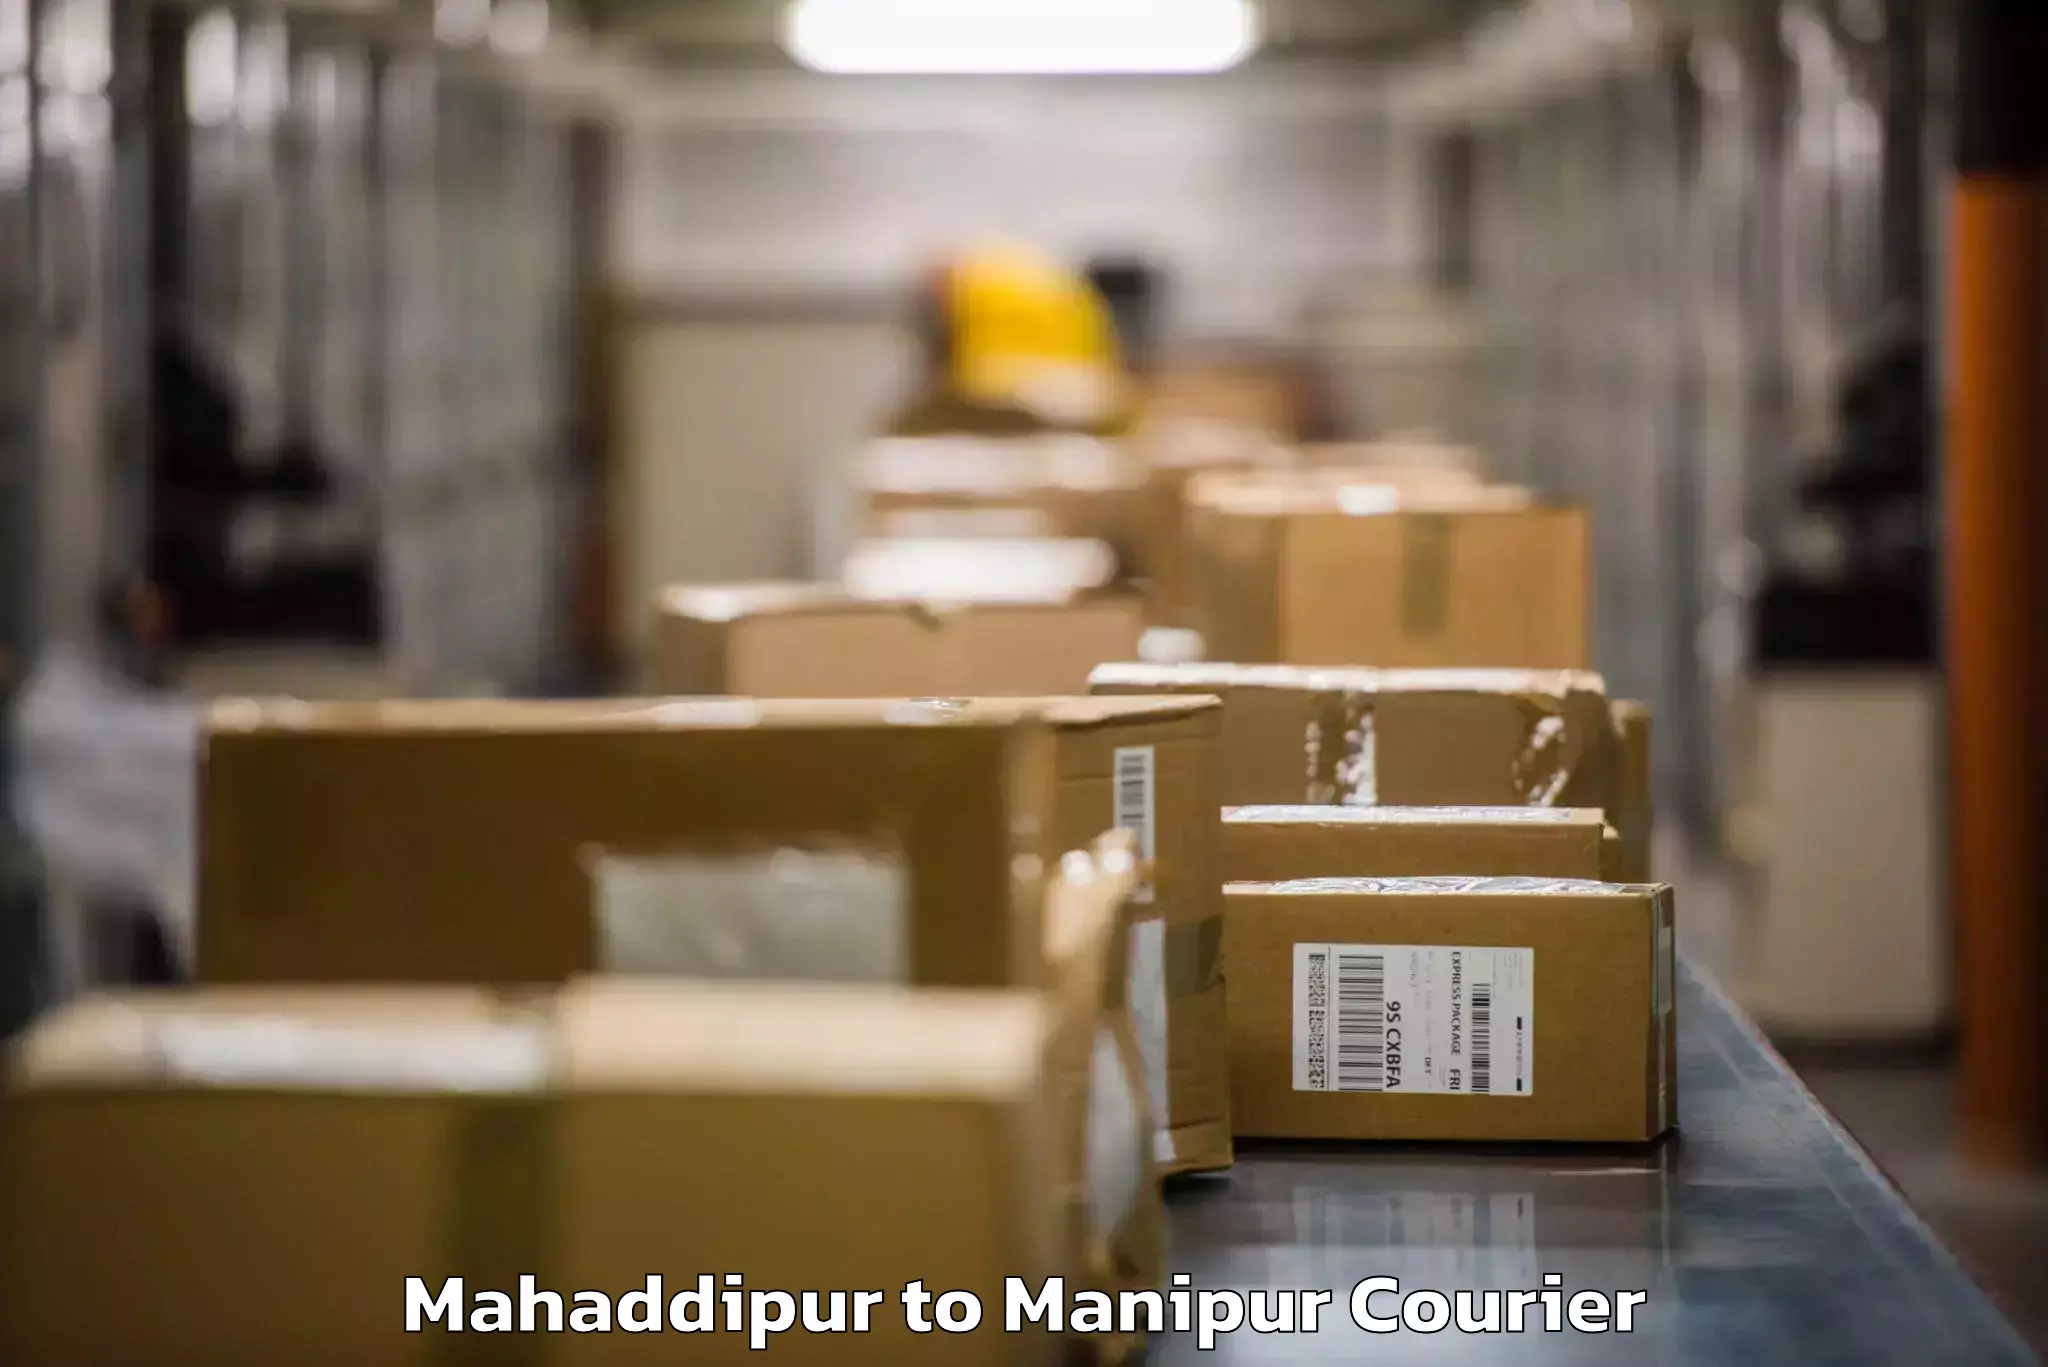 Door-to-door baggage service Mahaddipur to Manipur